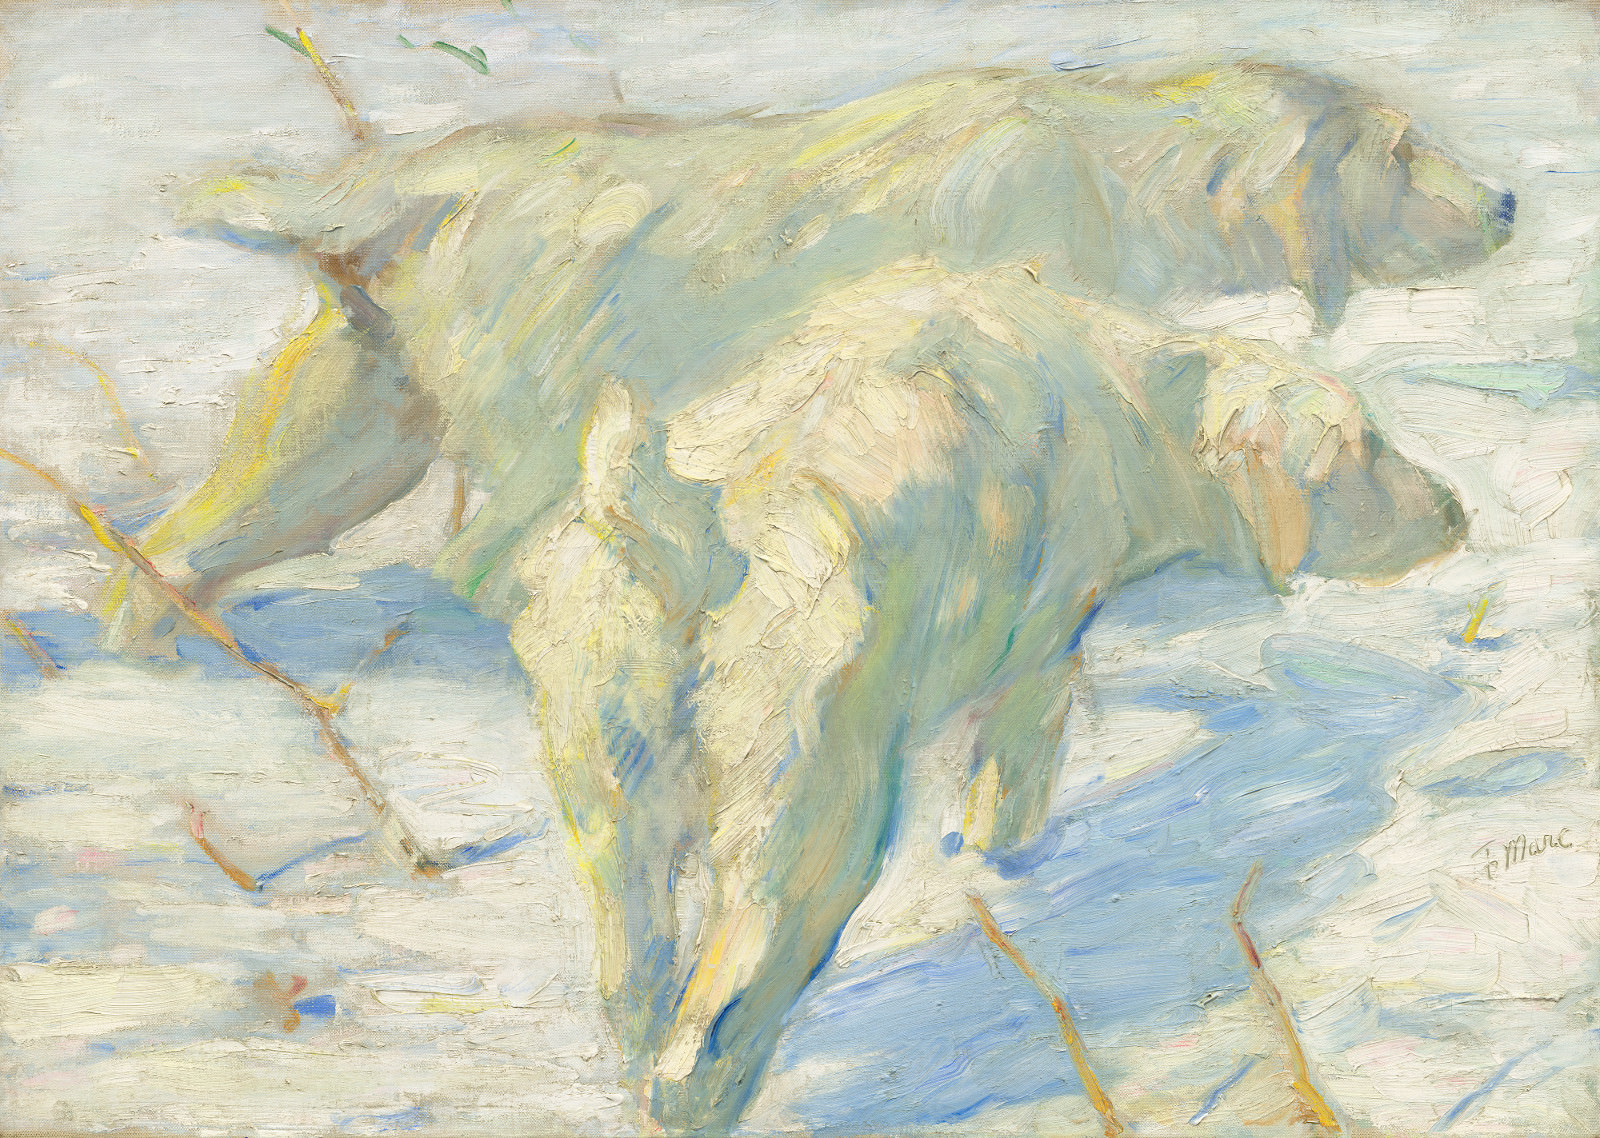 Feige. 11 - Hunde sibirischen Schnee, Franz Marc, 1909/1910, Öl auf Leinwand, 80,5 x 114 cm. National Gallery of Art, Washington. Herr Geschenk. e Frau. Stephen M. Kellen.